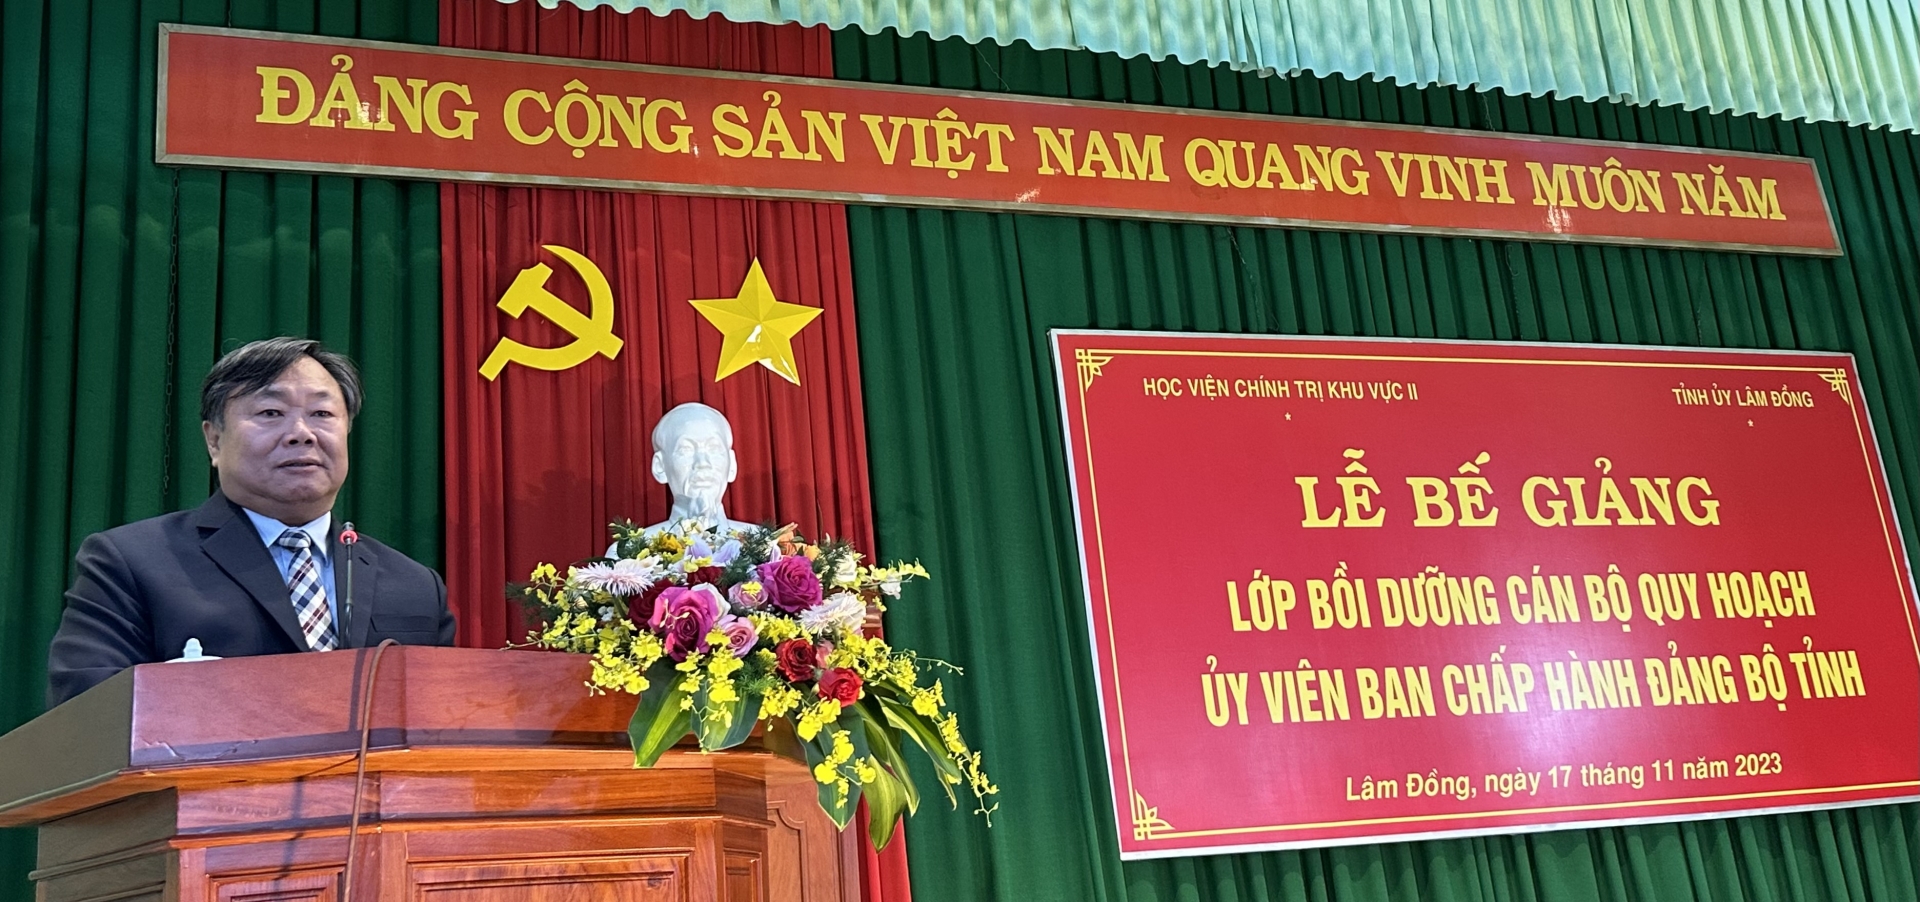 PGS. TS Nguyễn Quốc Dũng - Giám đốc Học viện Chính trị Khu vực II phát biểu tại lễ bế giảng